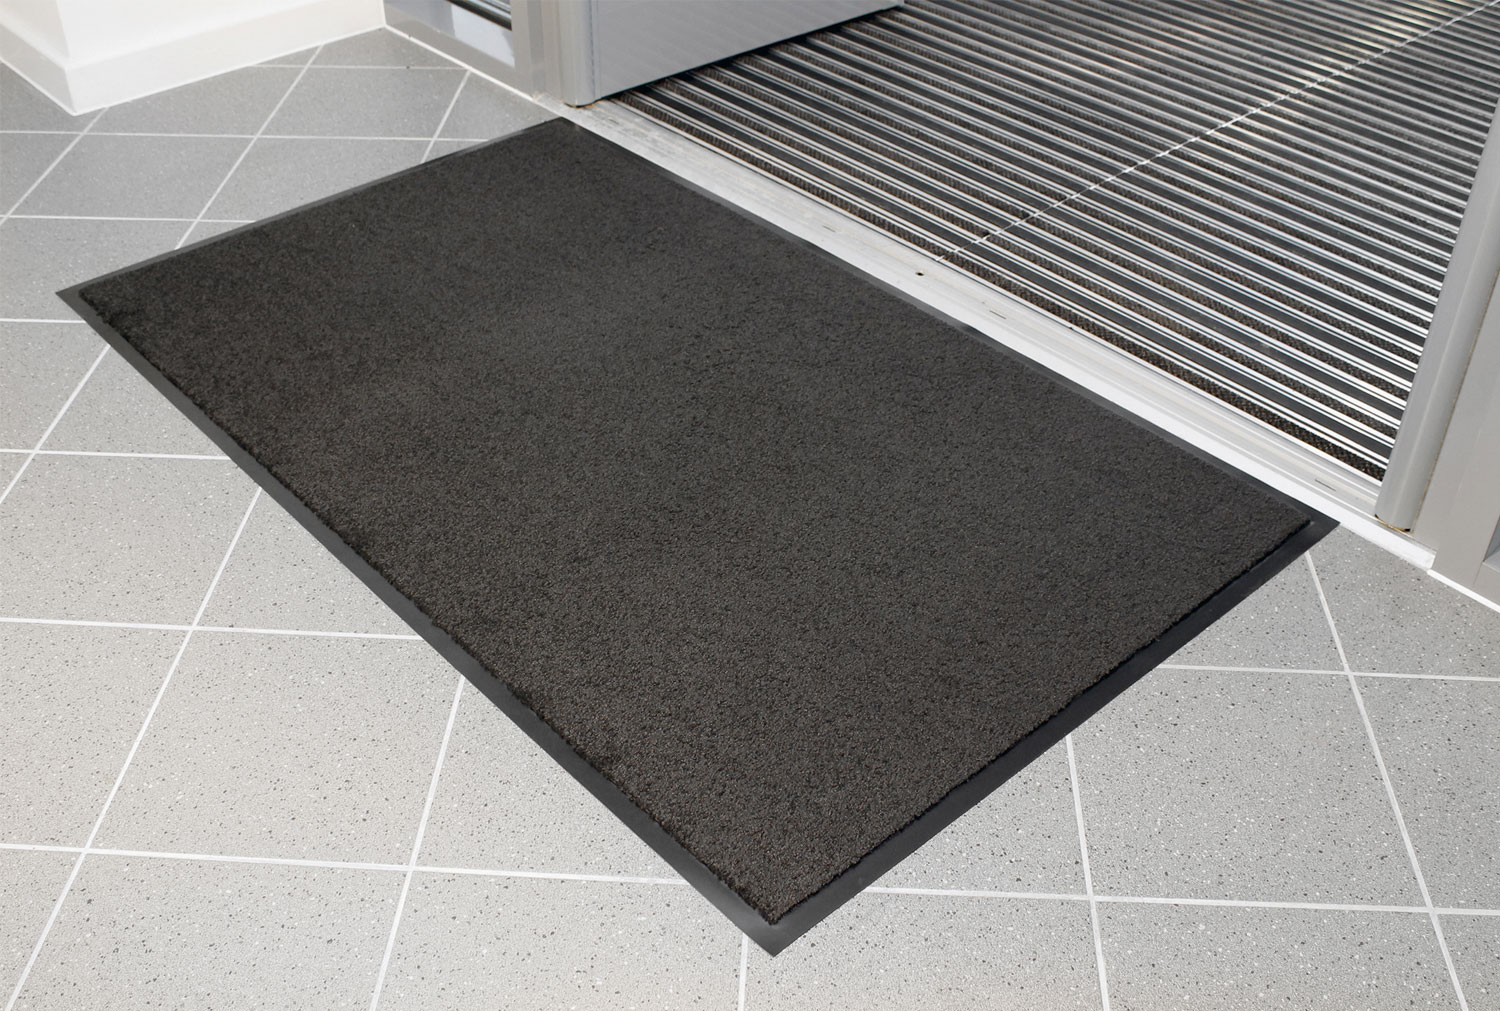 Entraplush Crush Resistant Carpet Doormat (Grey), 60wx90d (cm)